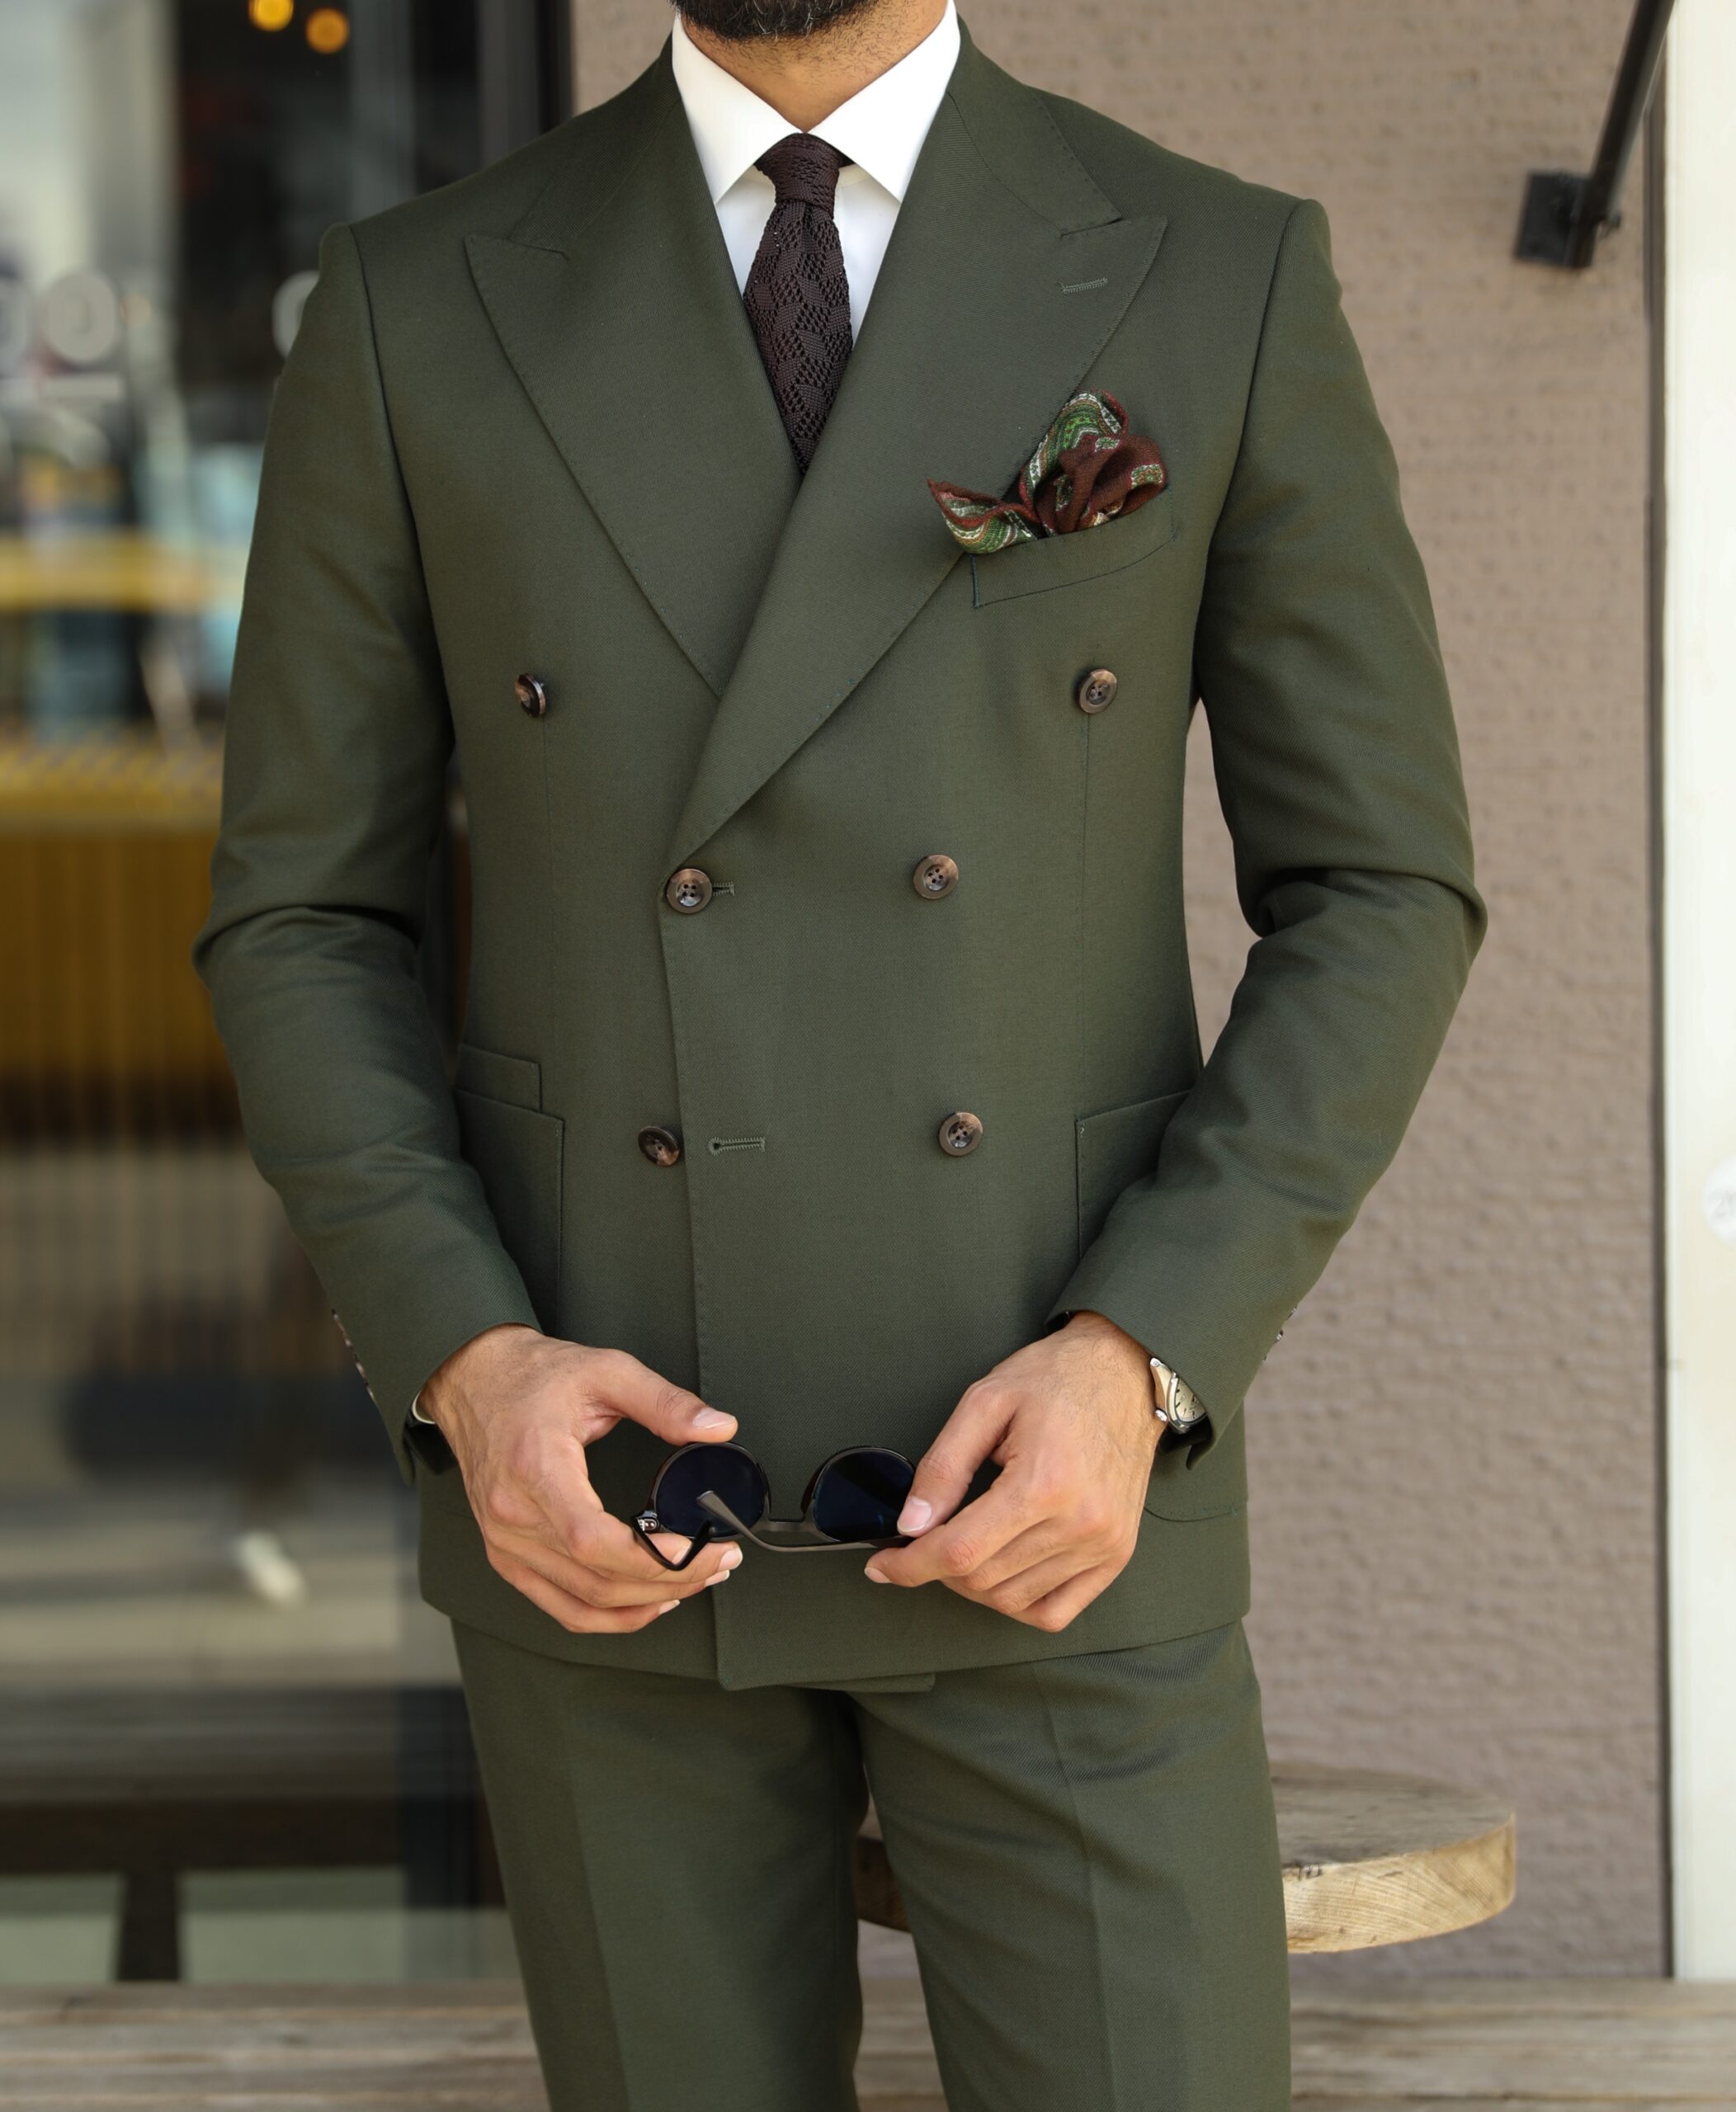 Men Suit Dark Olive Green Suits Wedding Suit Groom's Men Suit Stylish Suit  3 Piece Suit Gift for Men Engagement Party Wear Suits - Etsy